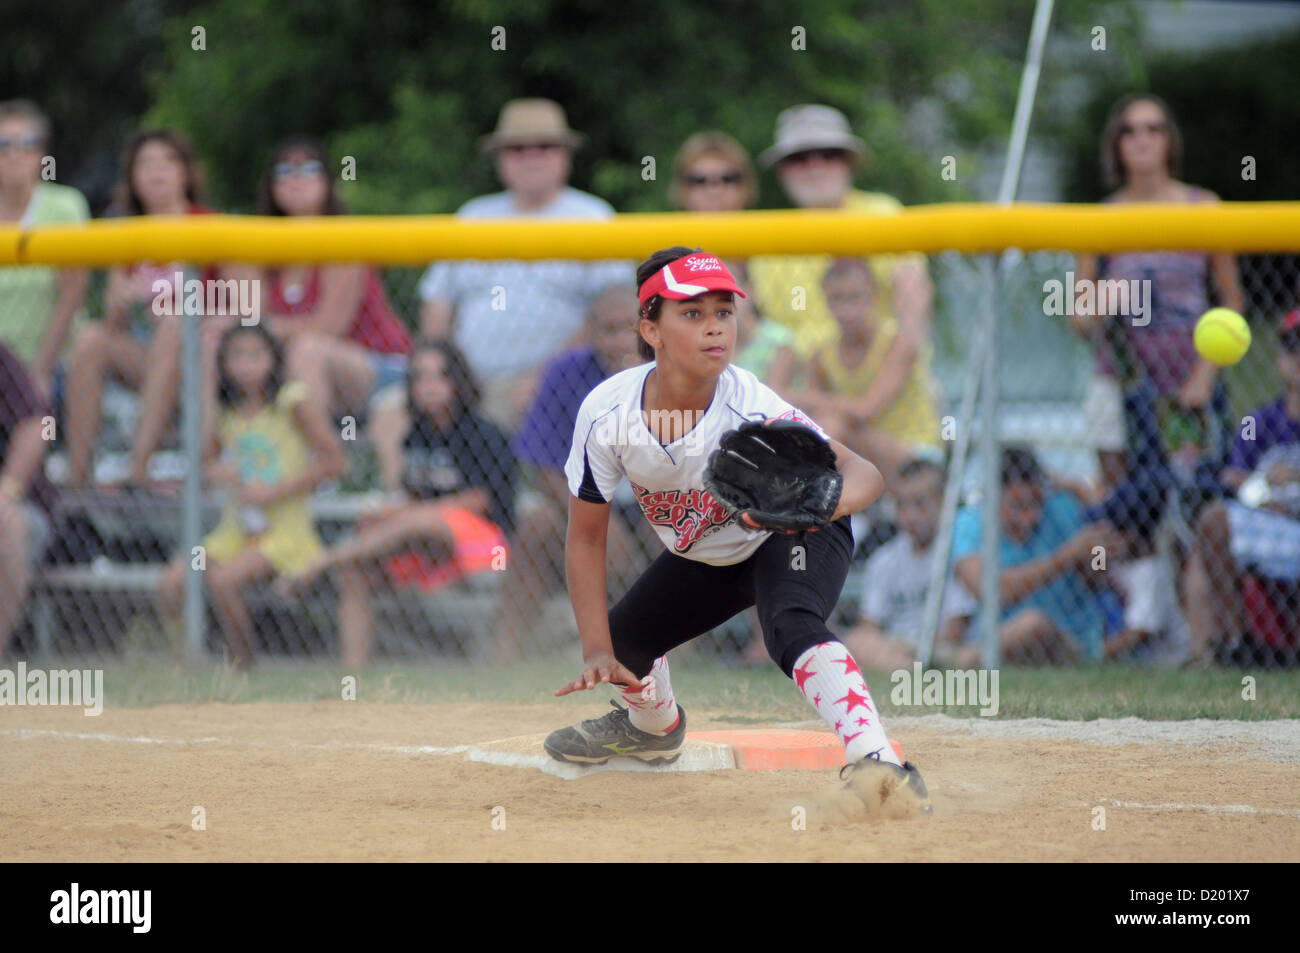 El softbol primer baseman estira para throw a jubilarse un bateador opuestos durante una Little League juego sancionado en el sur de Elgin, Illinois, EE.UU. Foto de stock